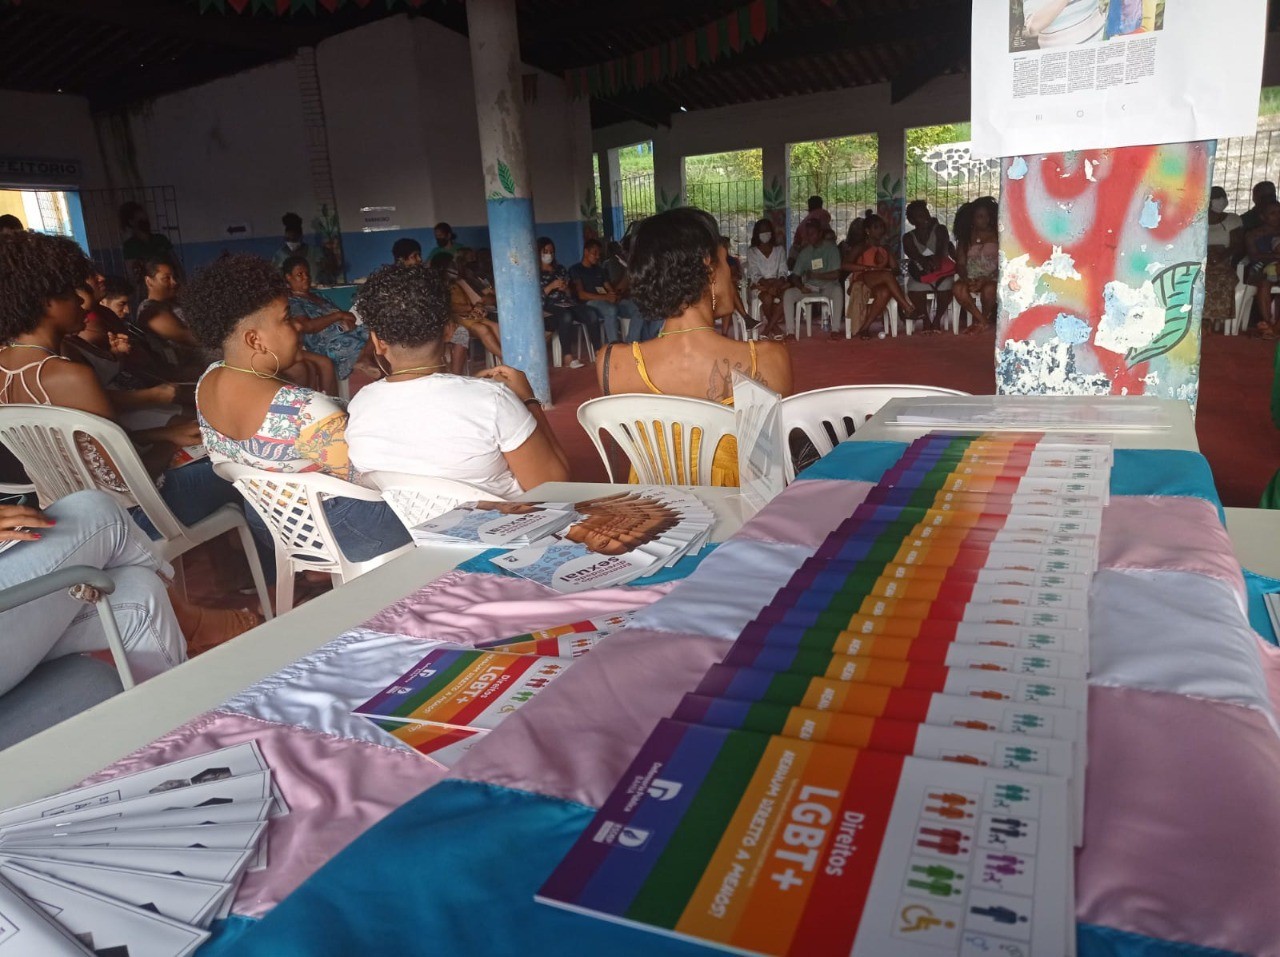 Defensoria Pública da Bahia celebra Dia do Orgulho com lançamento de cartilha sobre direitos das pessoas LGBTs